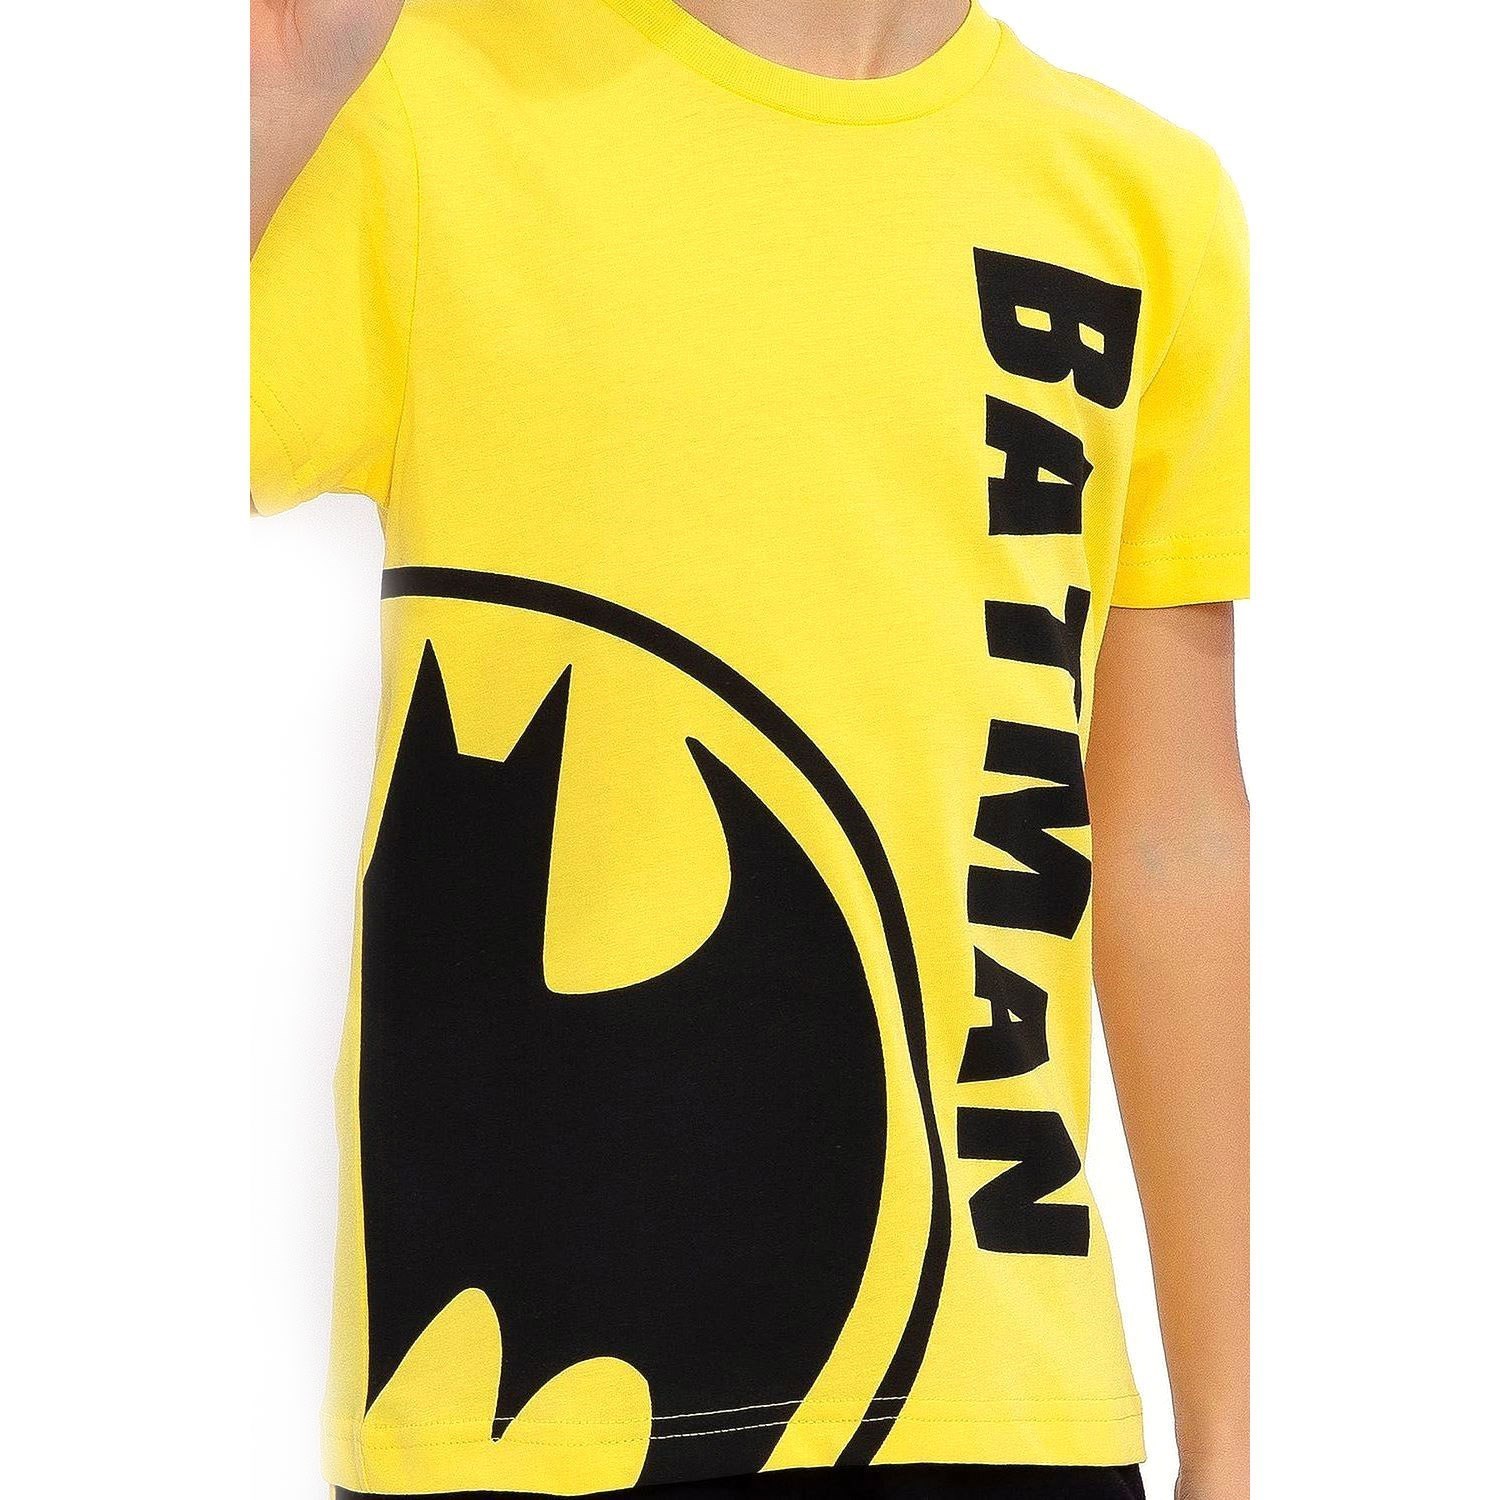 Batman Erkek Çocuk Bermuda Takımı L1481-3 Sarı